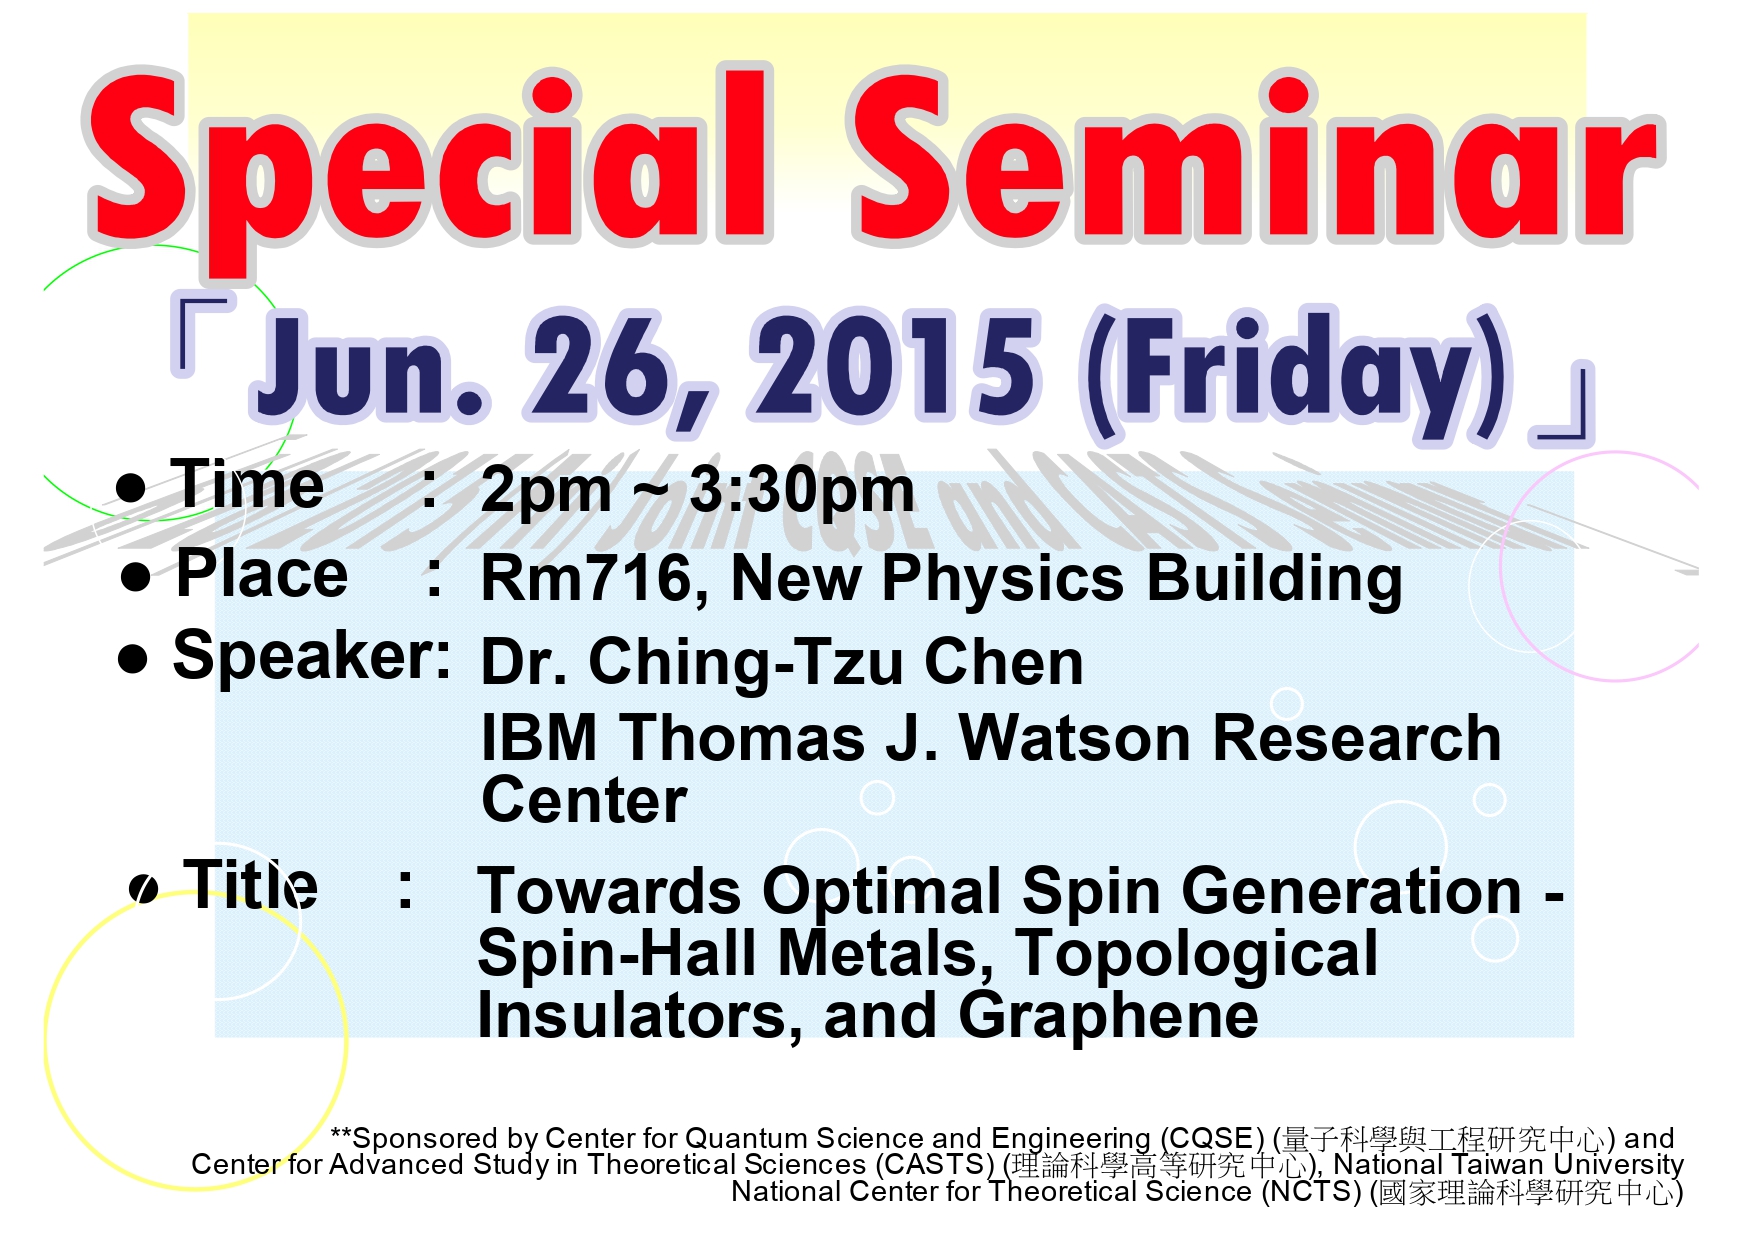 Special Seminar